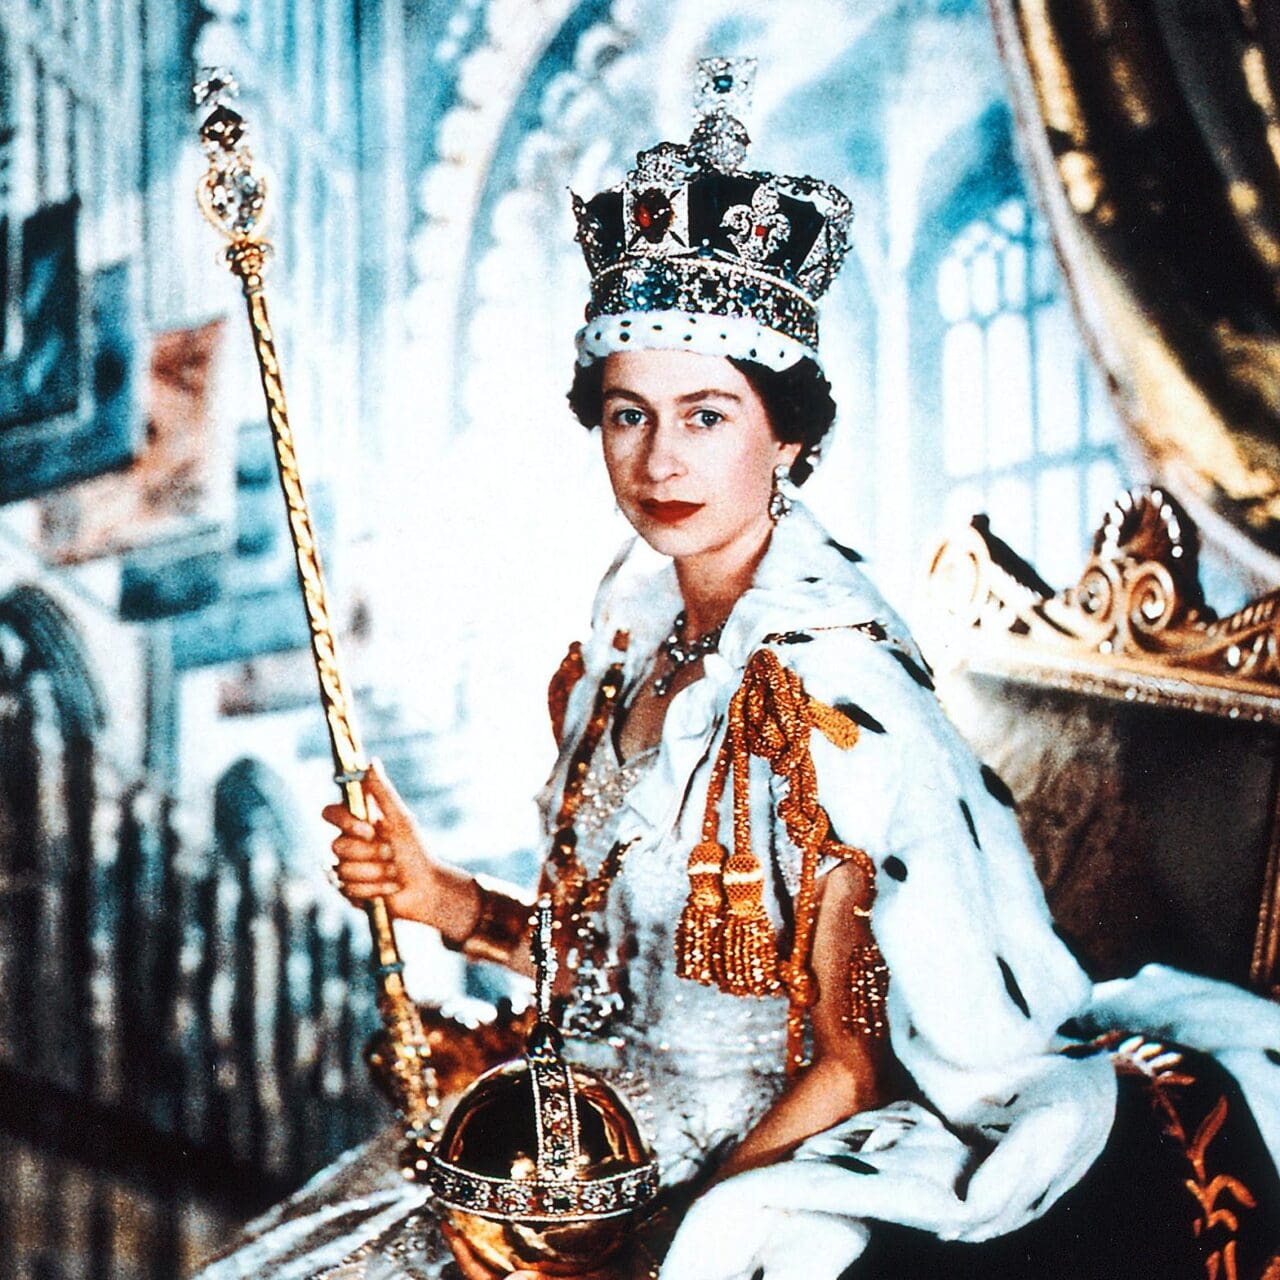 Old Image of Queen Elizabeth ||